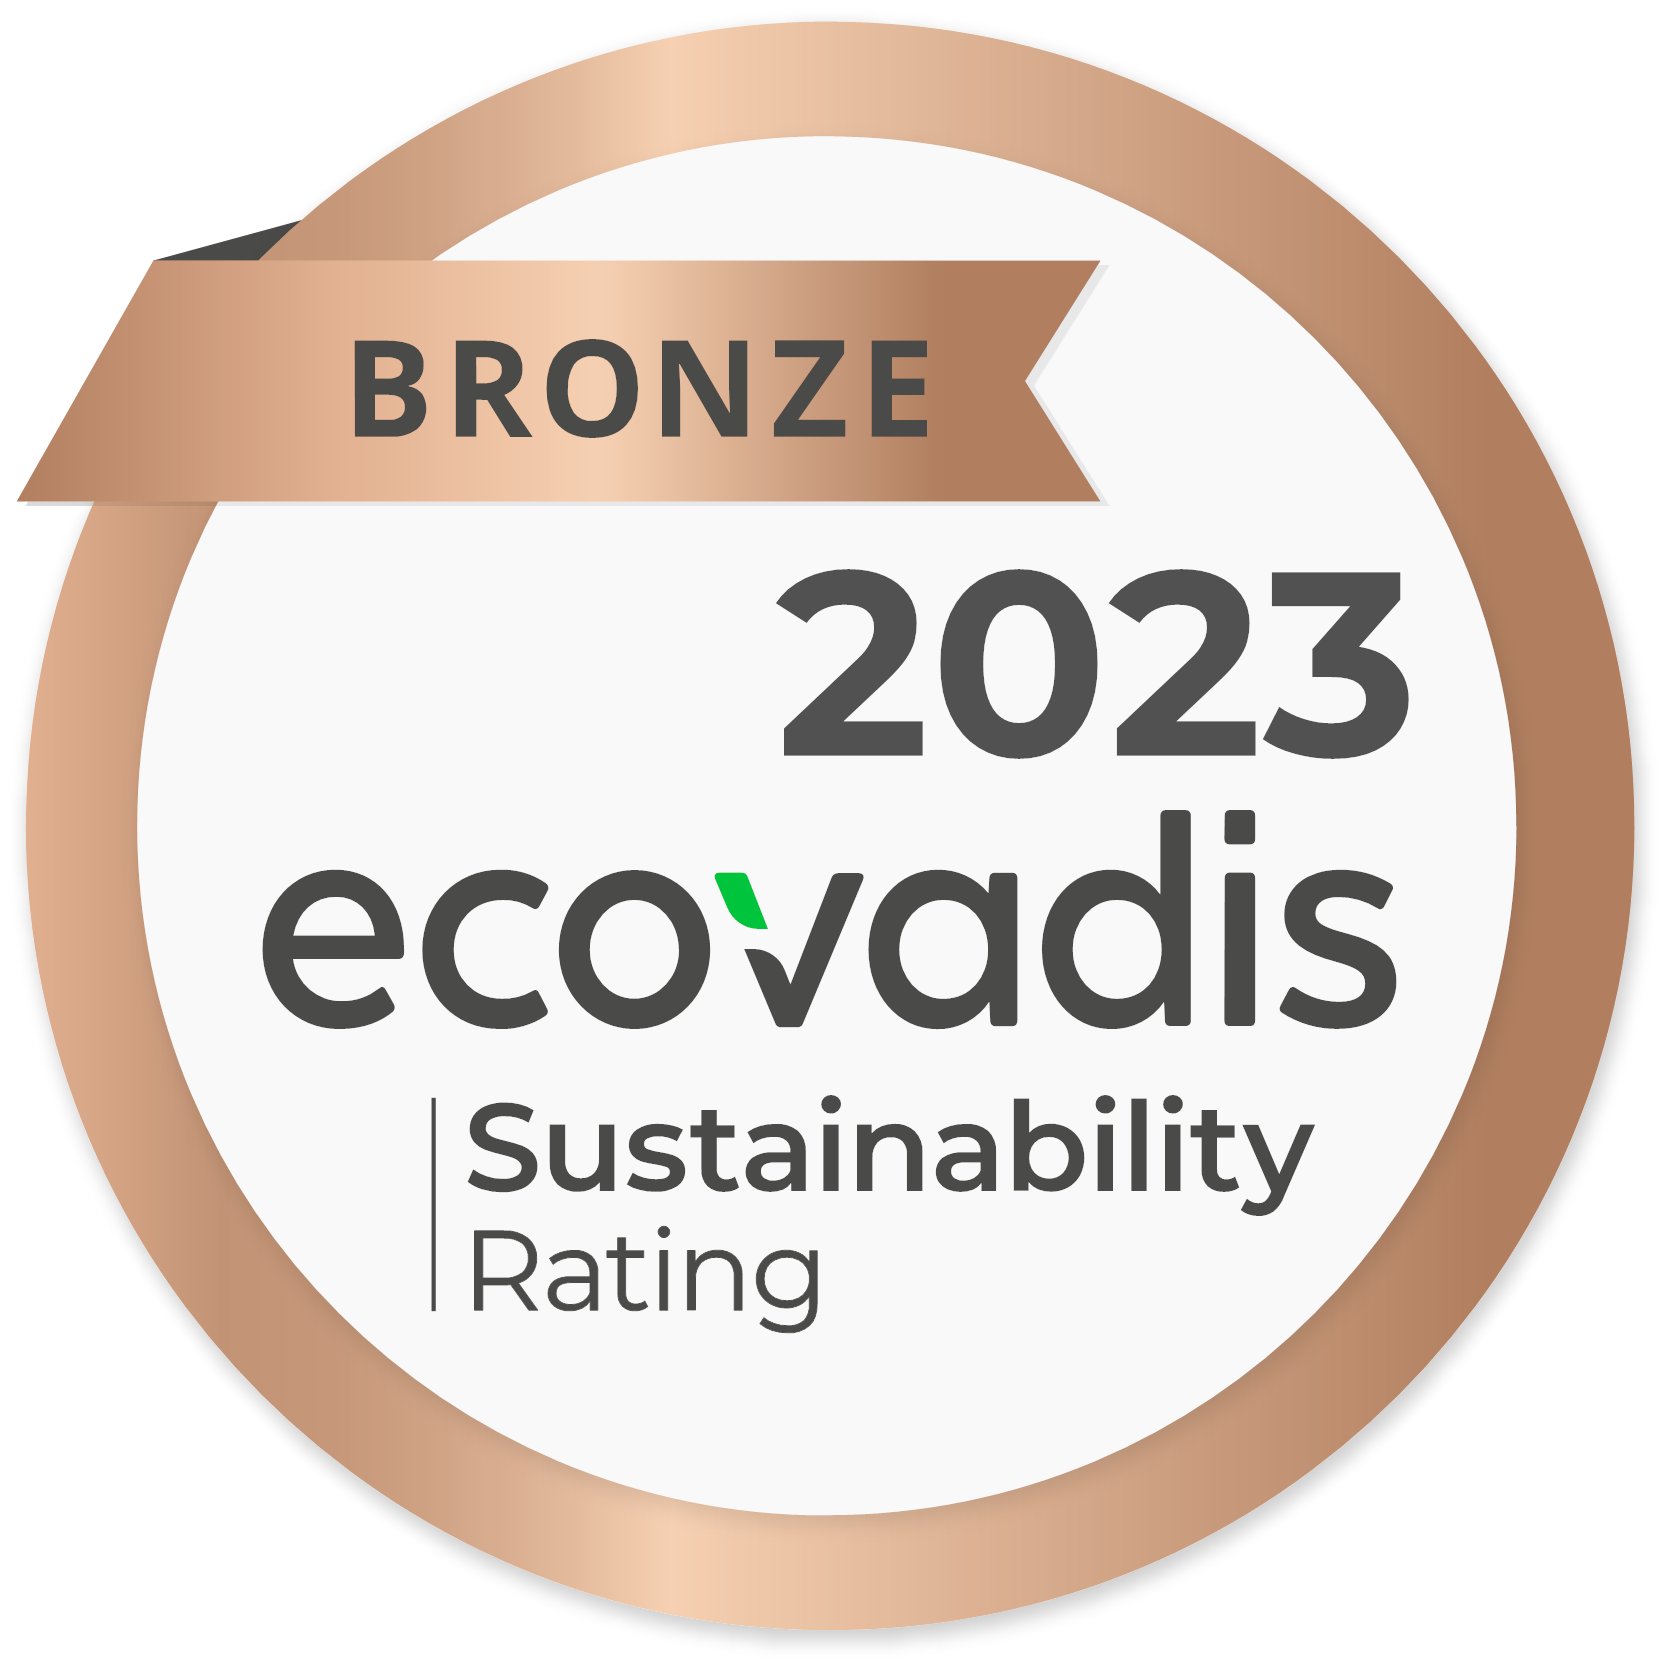 Calificación de sostenibilidad de bronce de Ecovadis para 2023